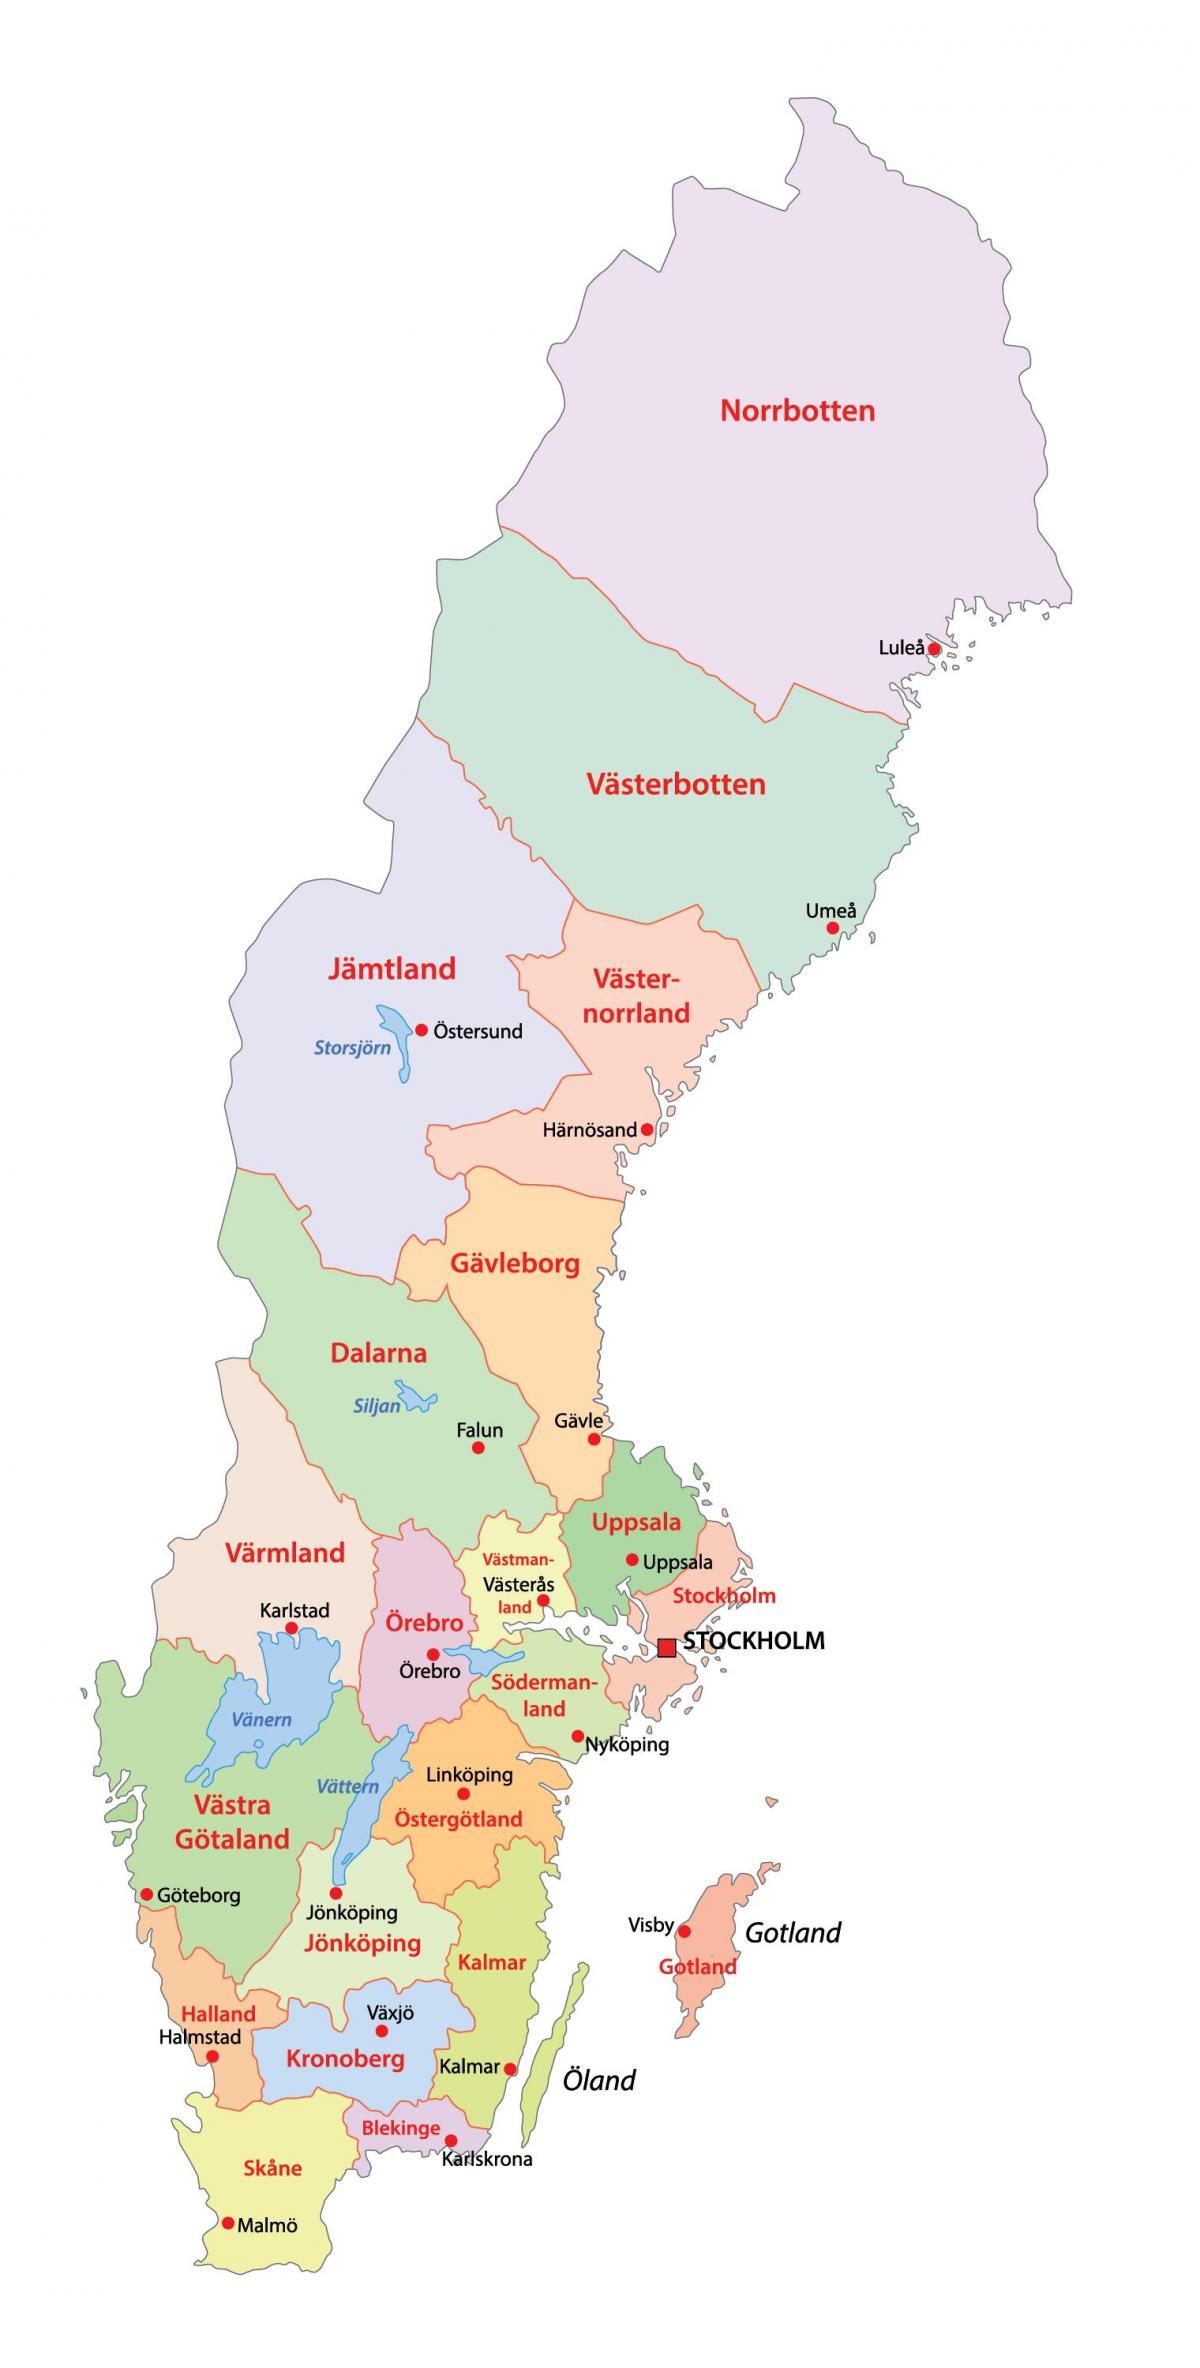 Mapa del estado de Suecia